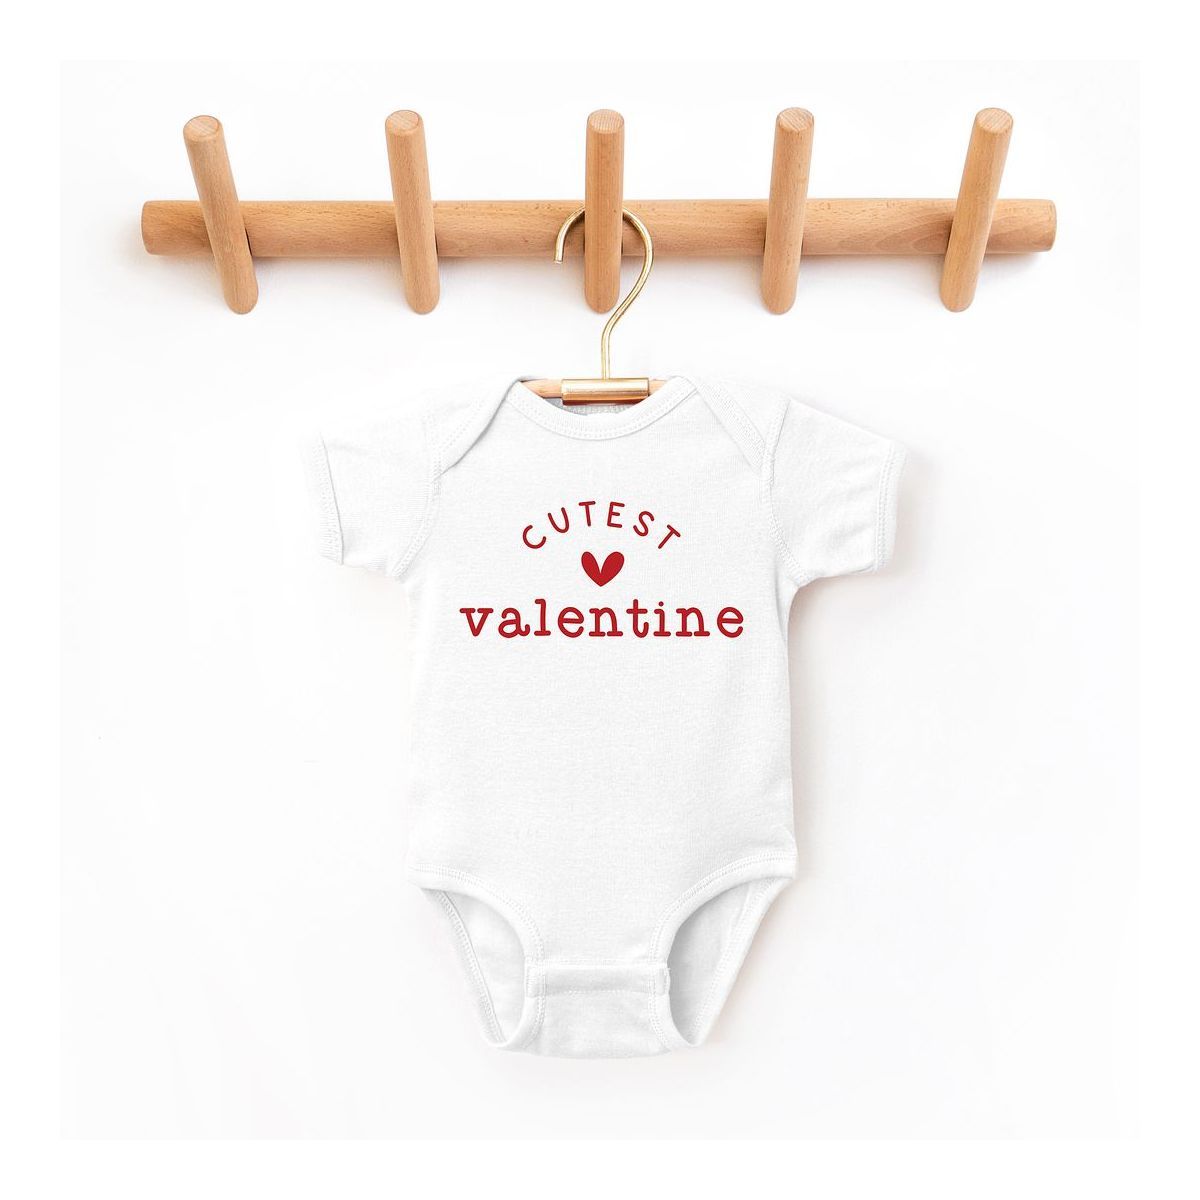 The Juniper Shop Cutest Valentine Baby Onesie | Target